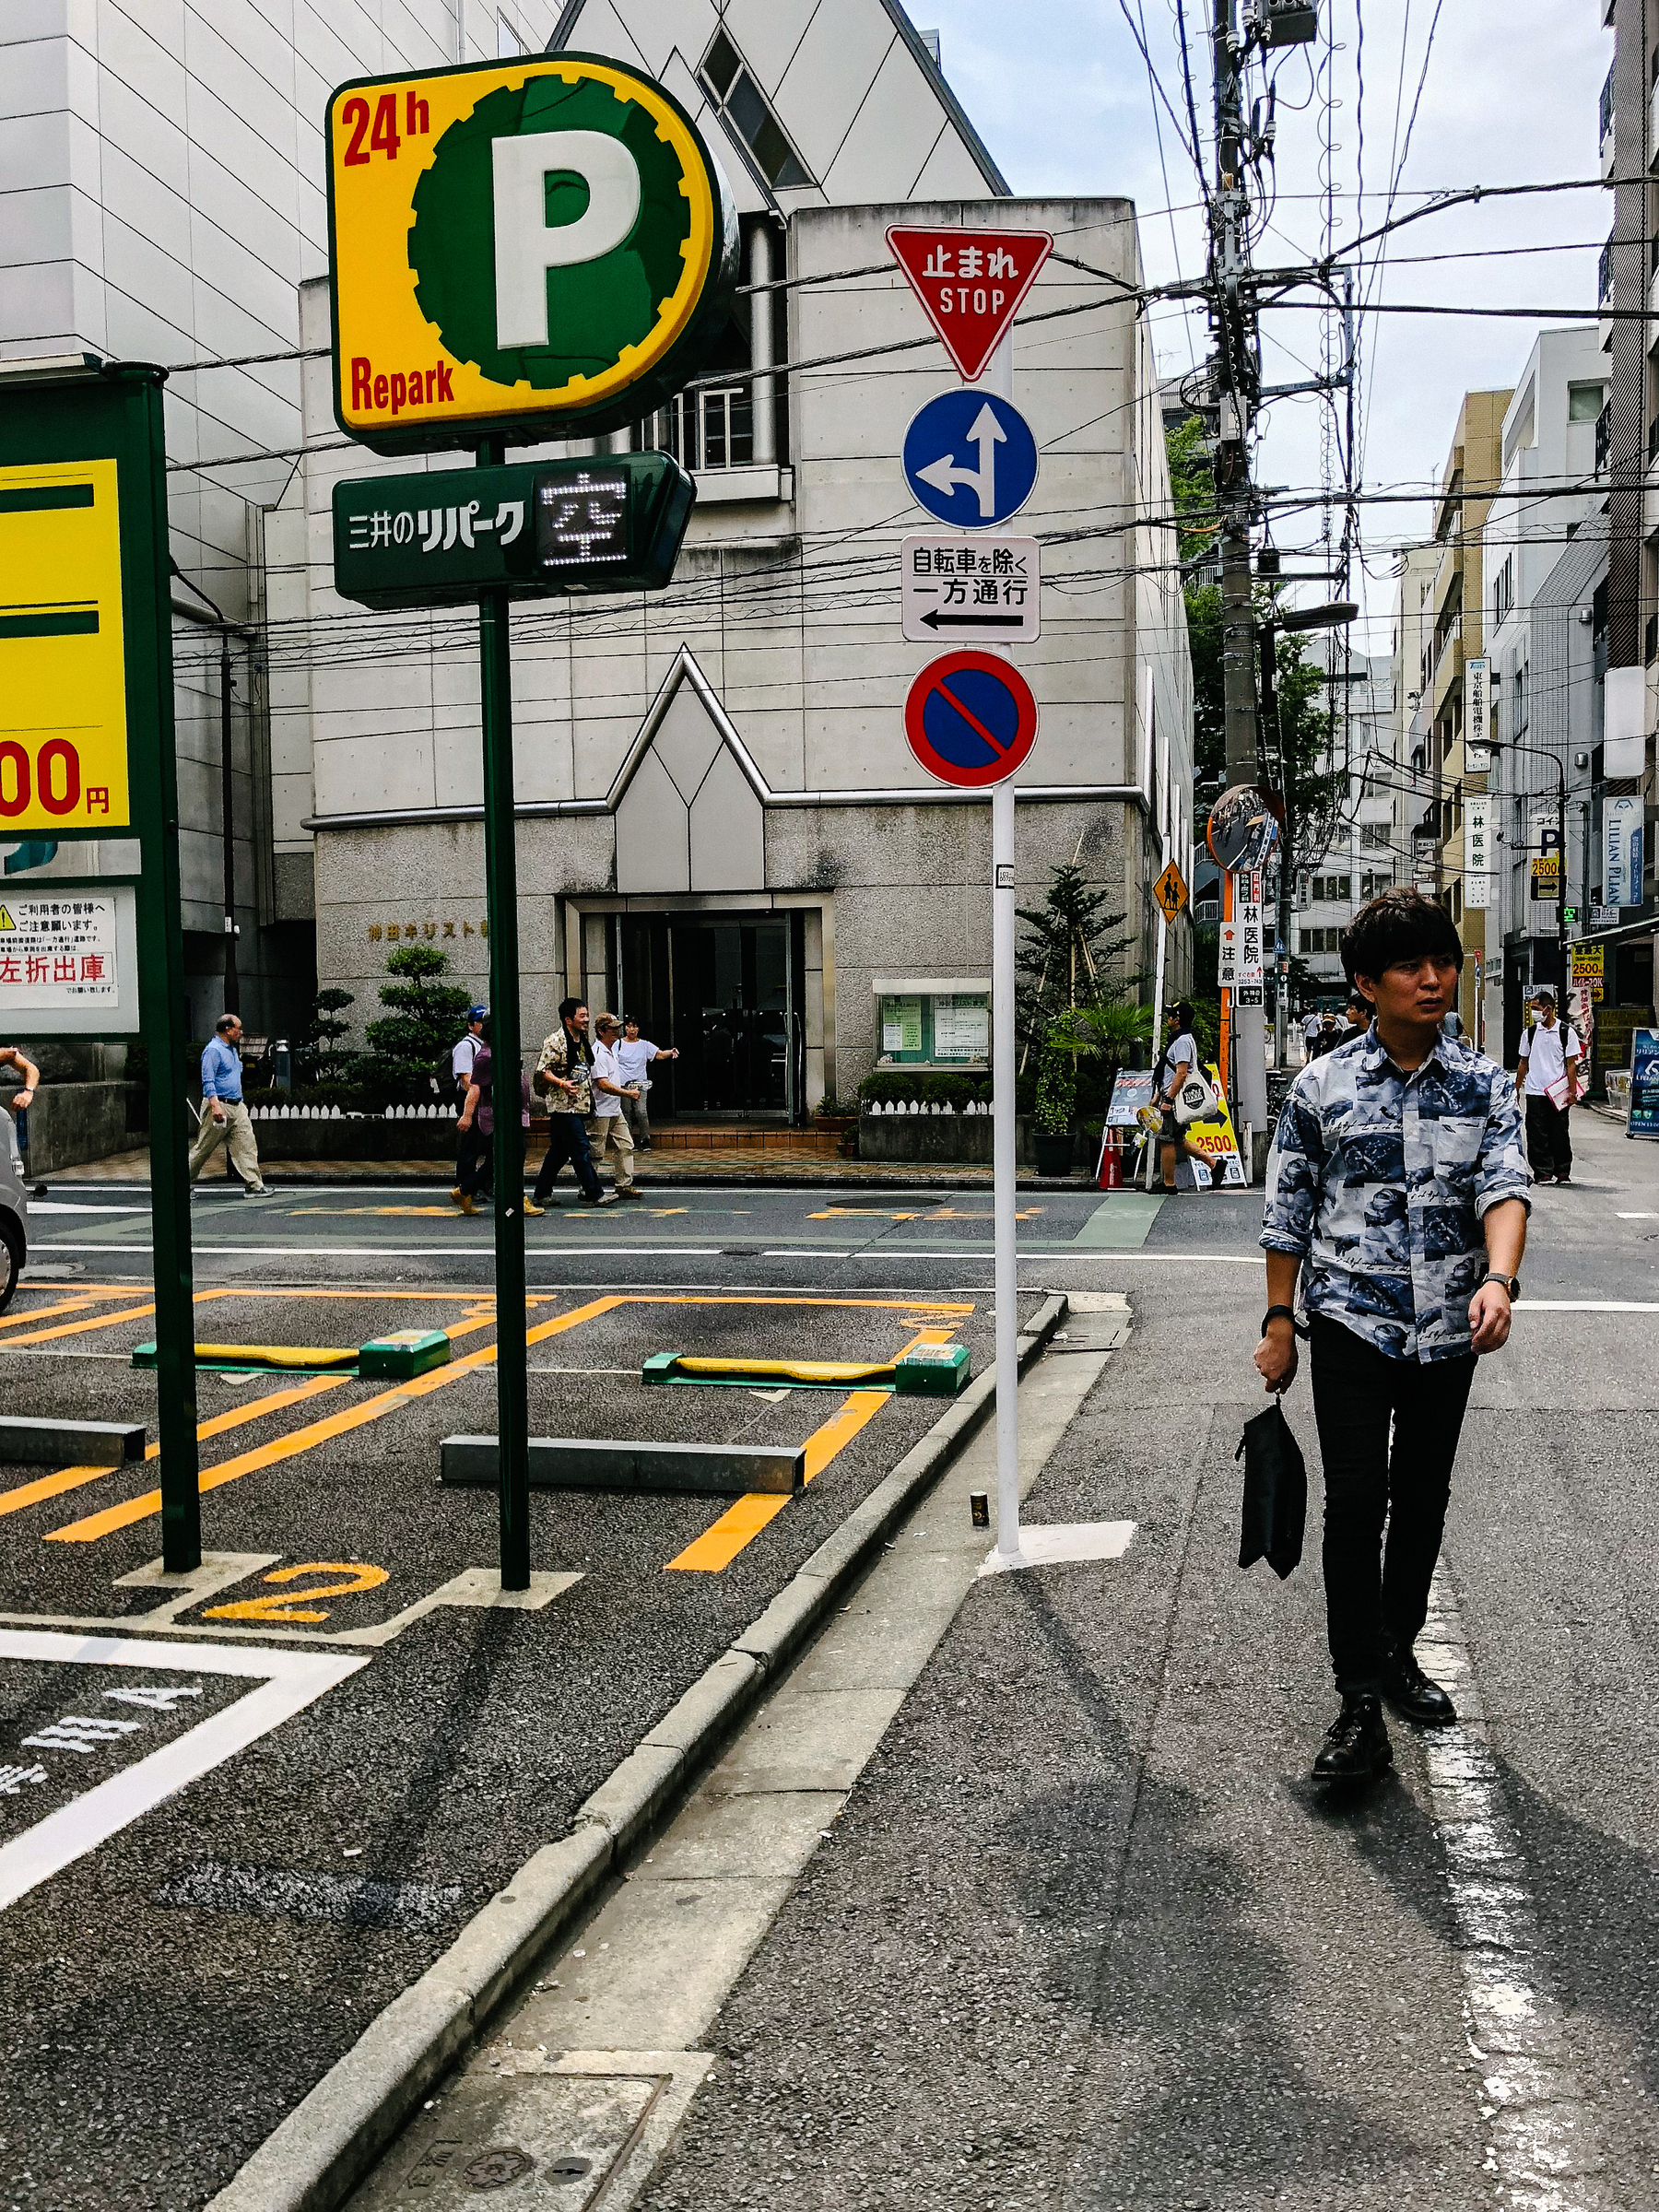 A man walks in a Tokyo street, parking spots next to him. 